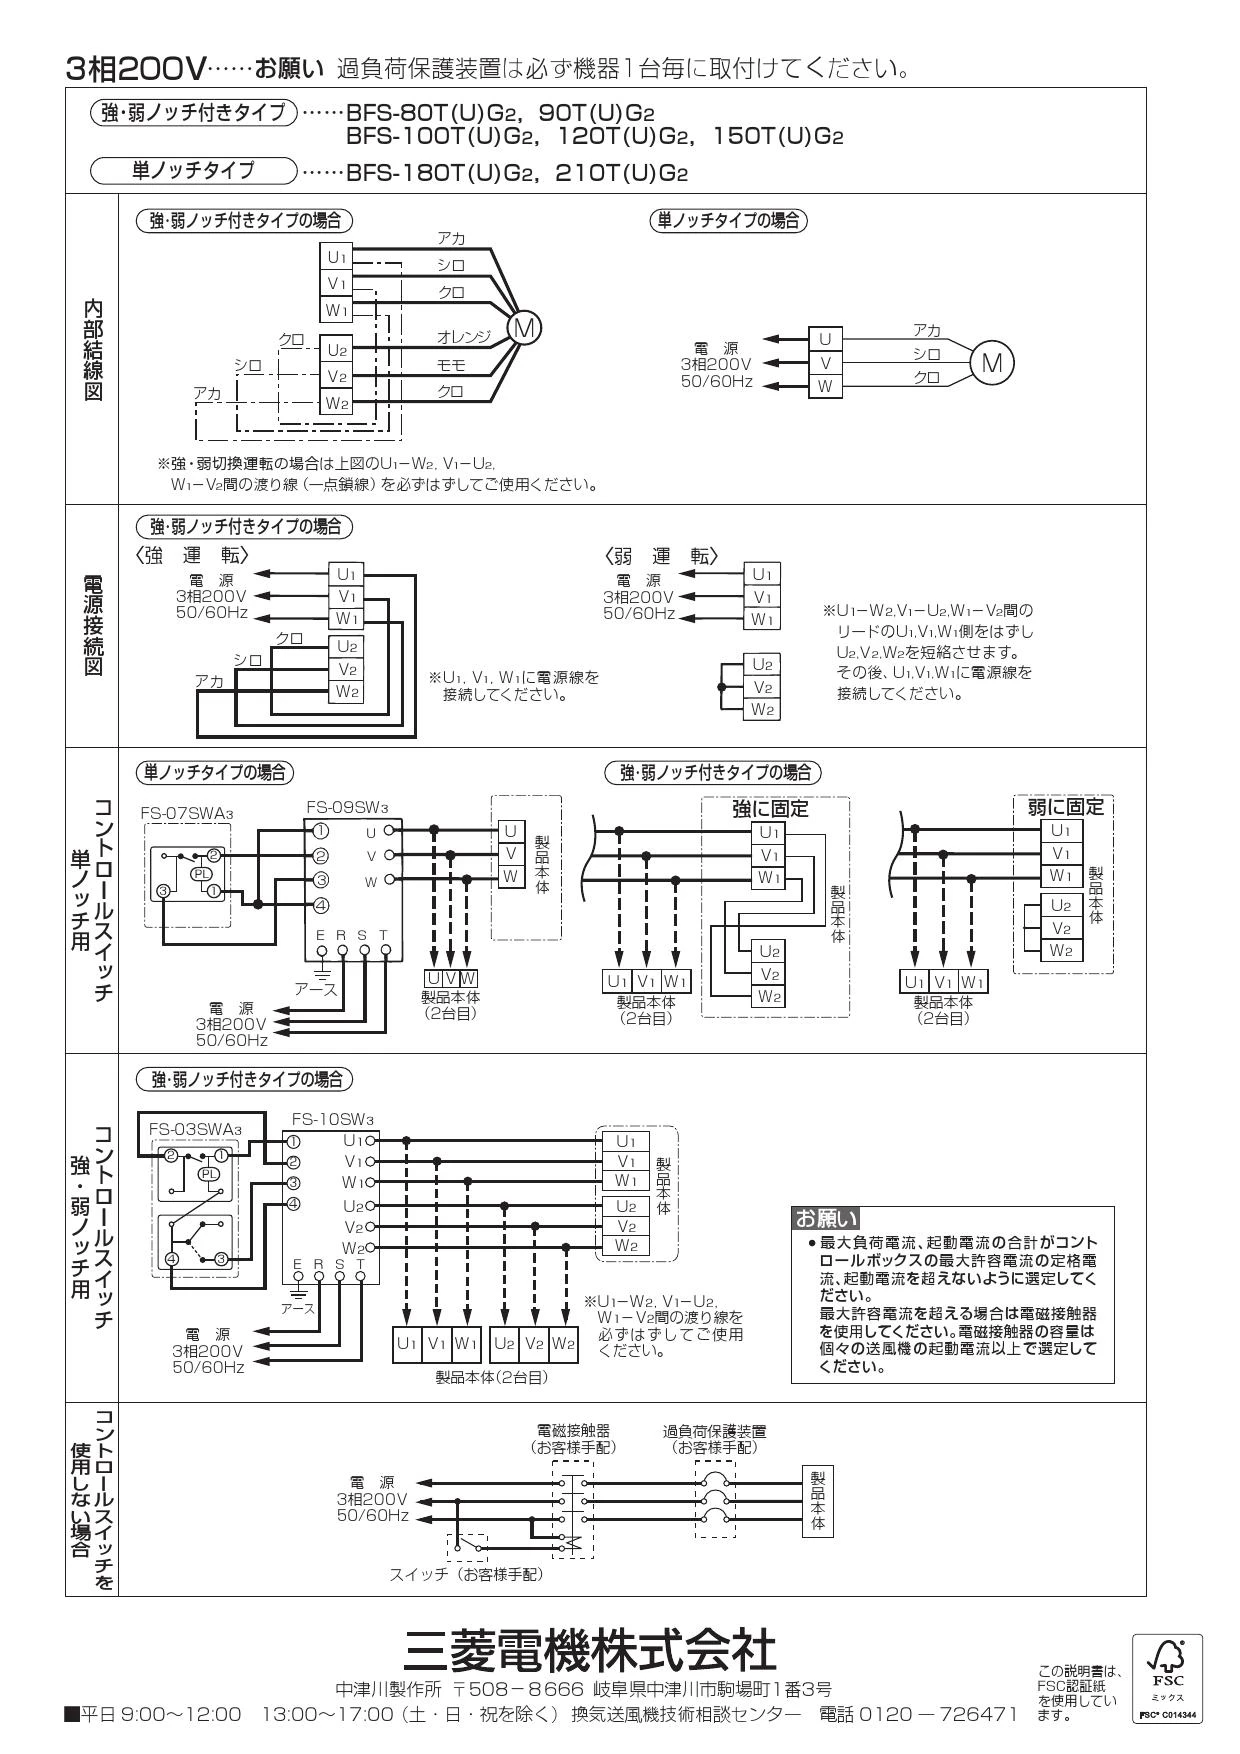 【新品未開封】BFS-40SUG2 三菱電機ストレートシロッコファン 換気扇